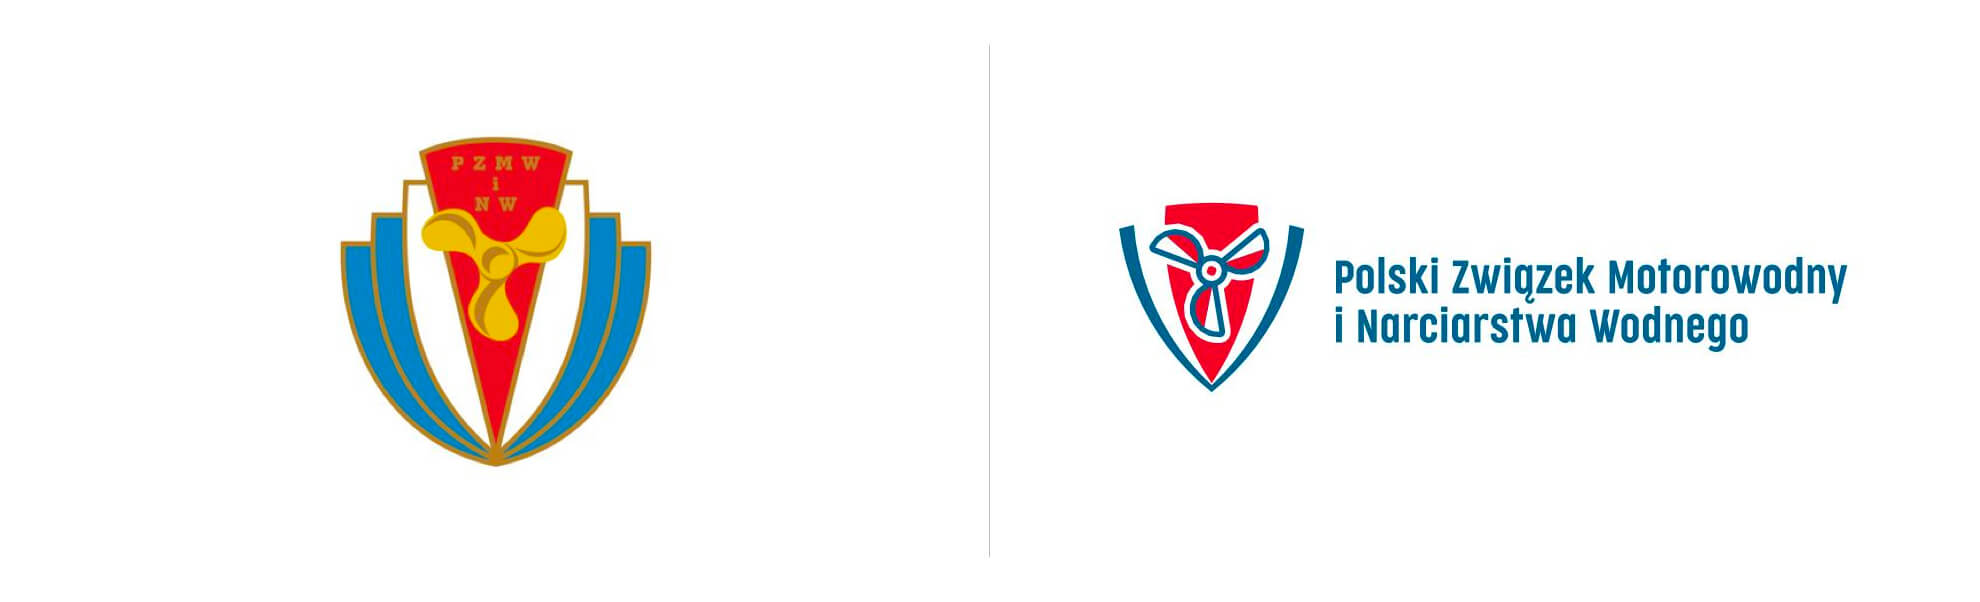 Stare i nowe logo Polskiego Związku Motorowodnego i Narciarstwa Wodnego